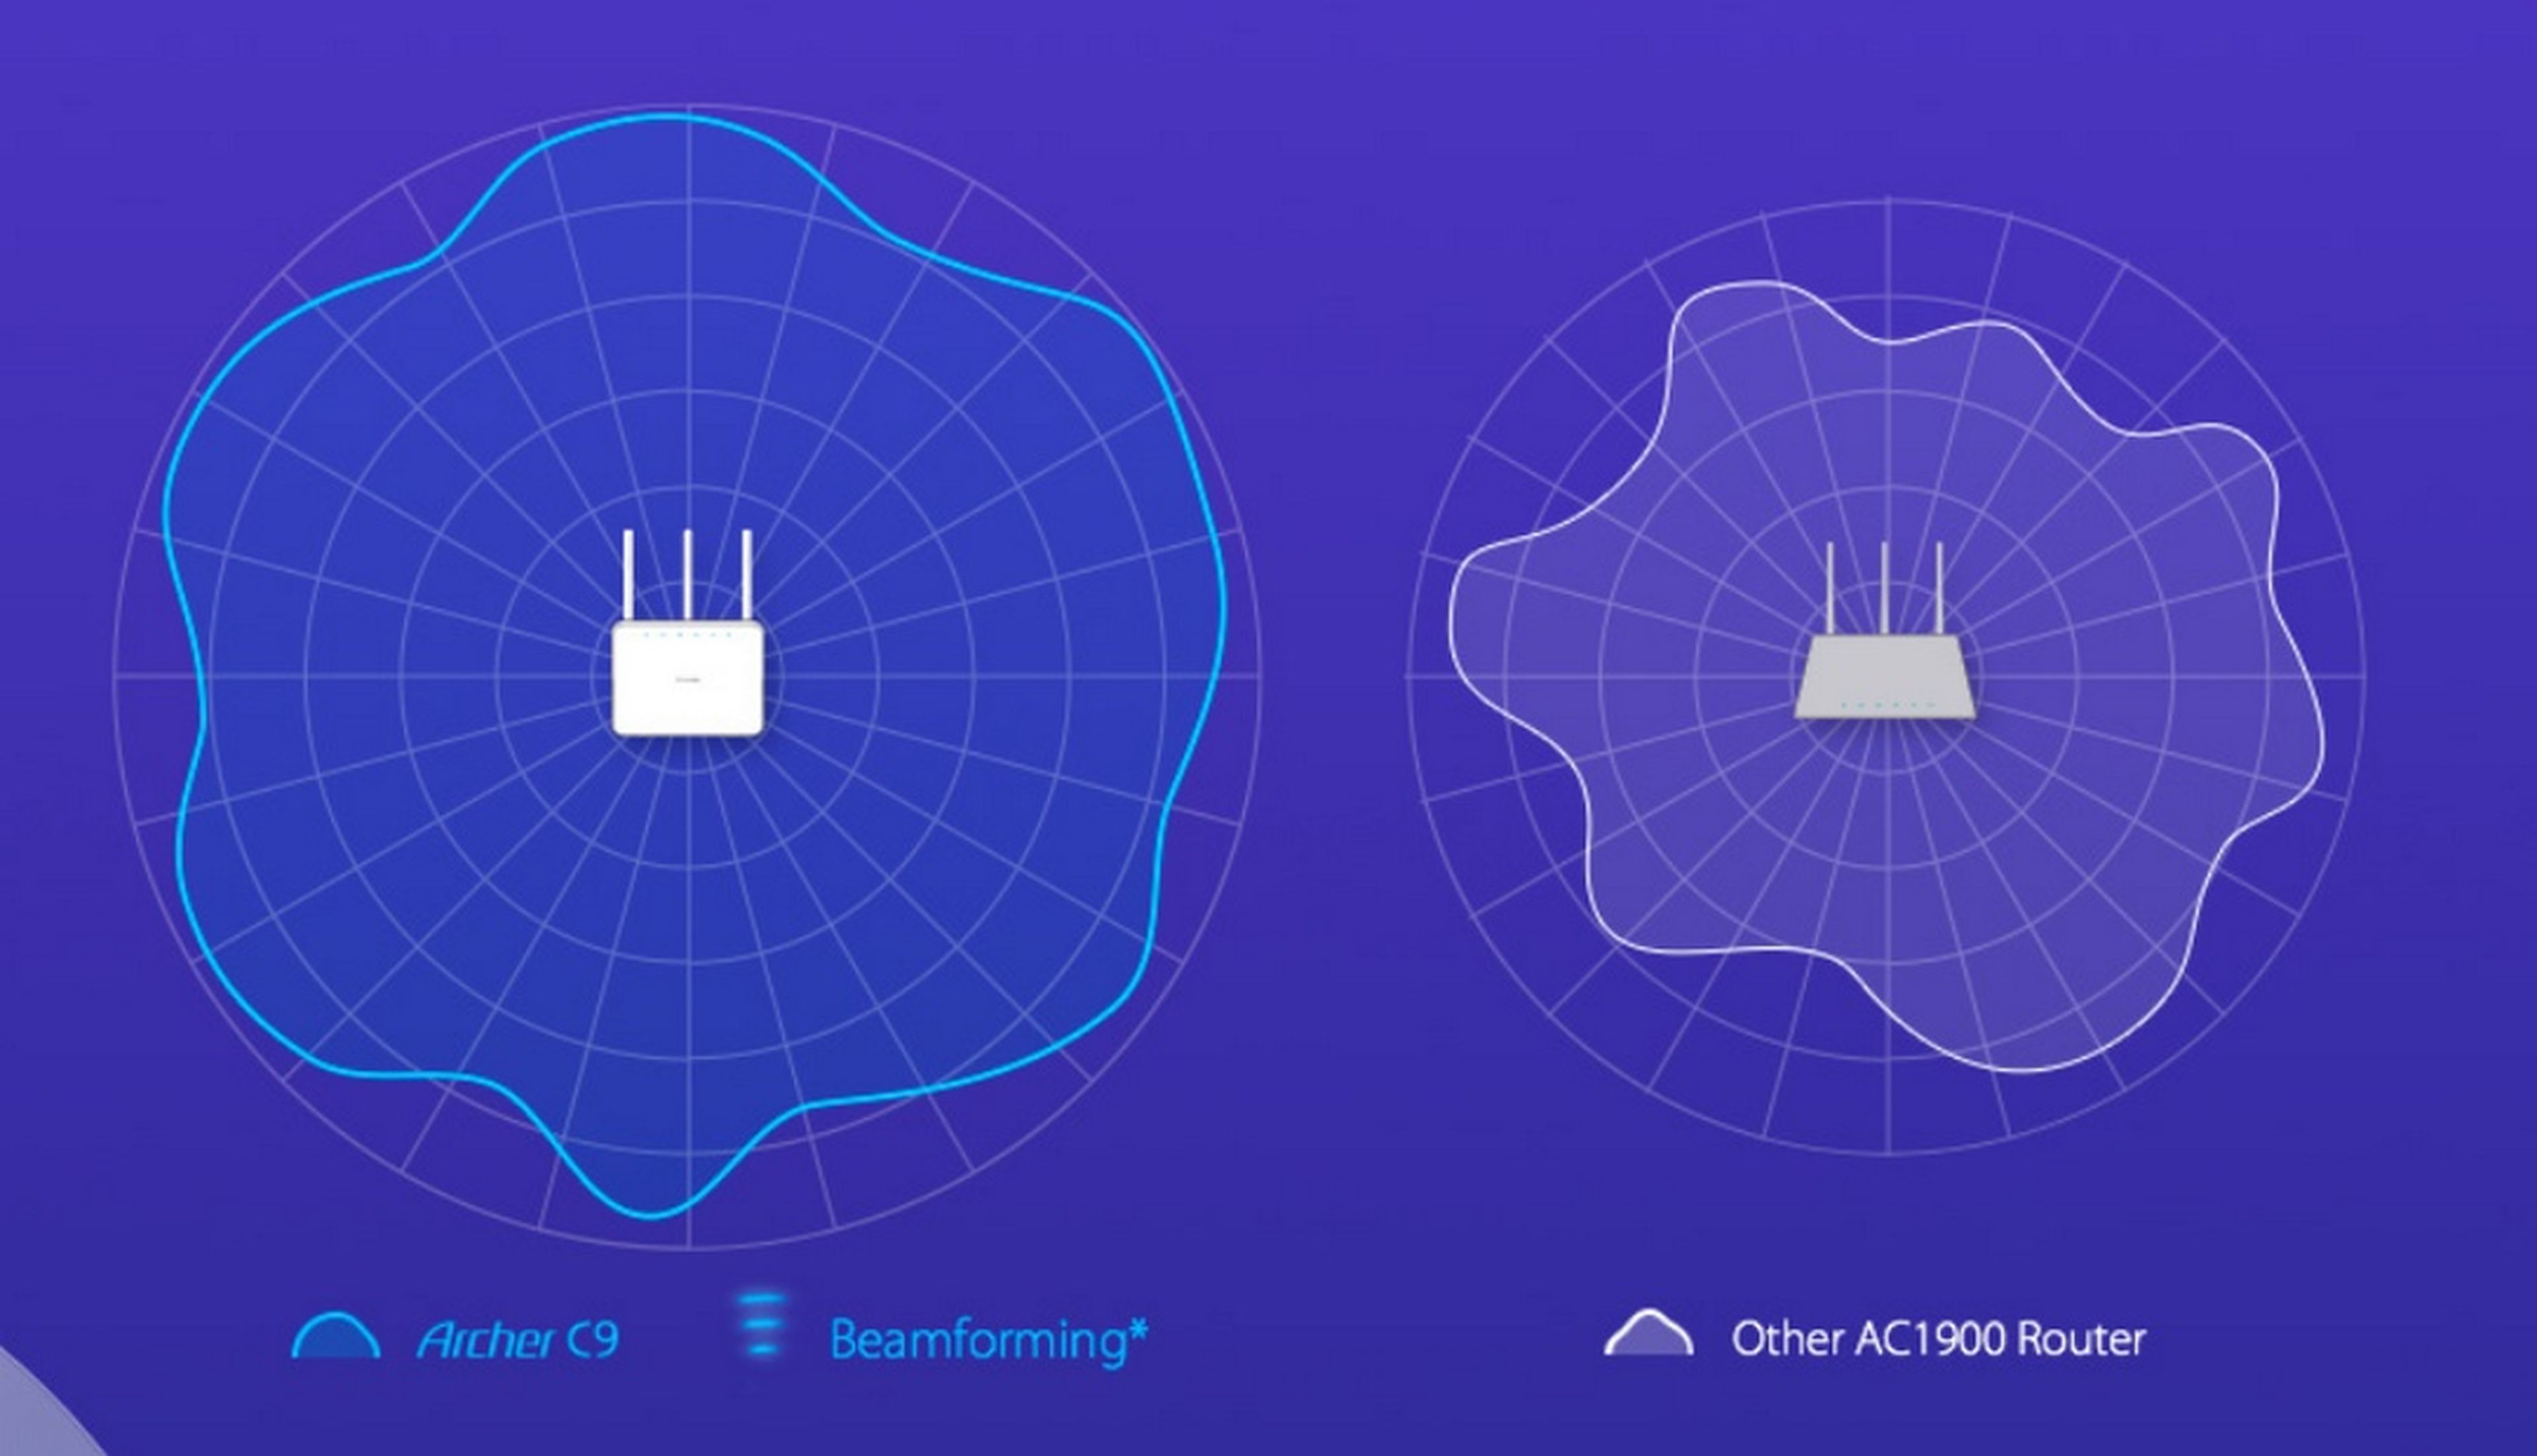 Beamforming, qué es y cómo debería afectar a tu compra de un router